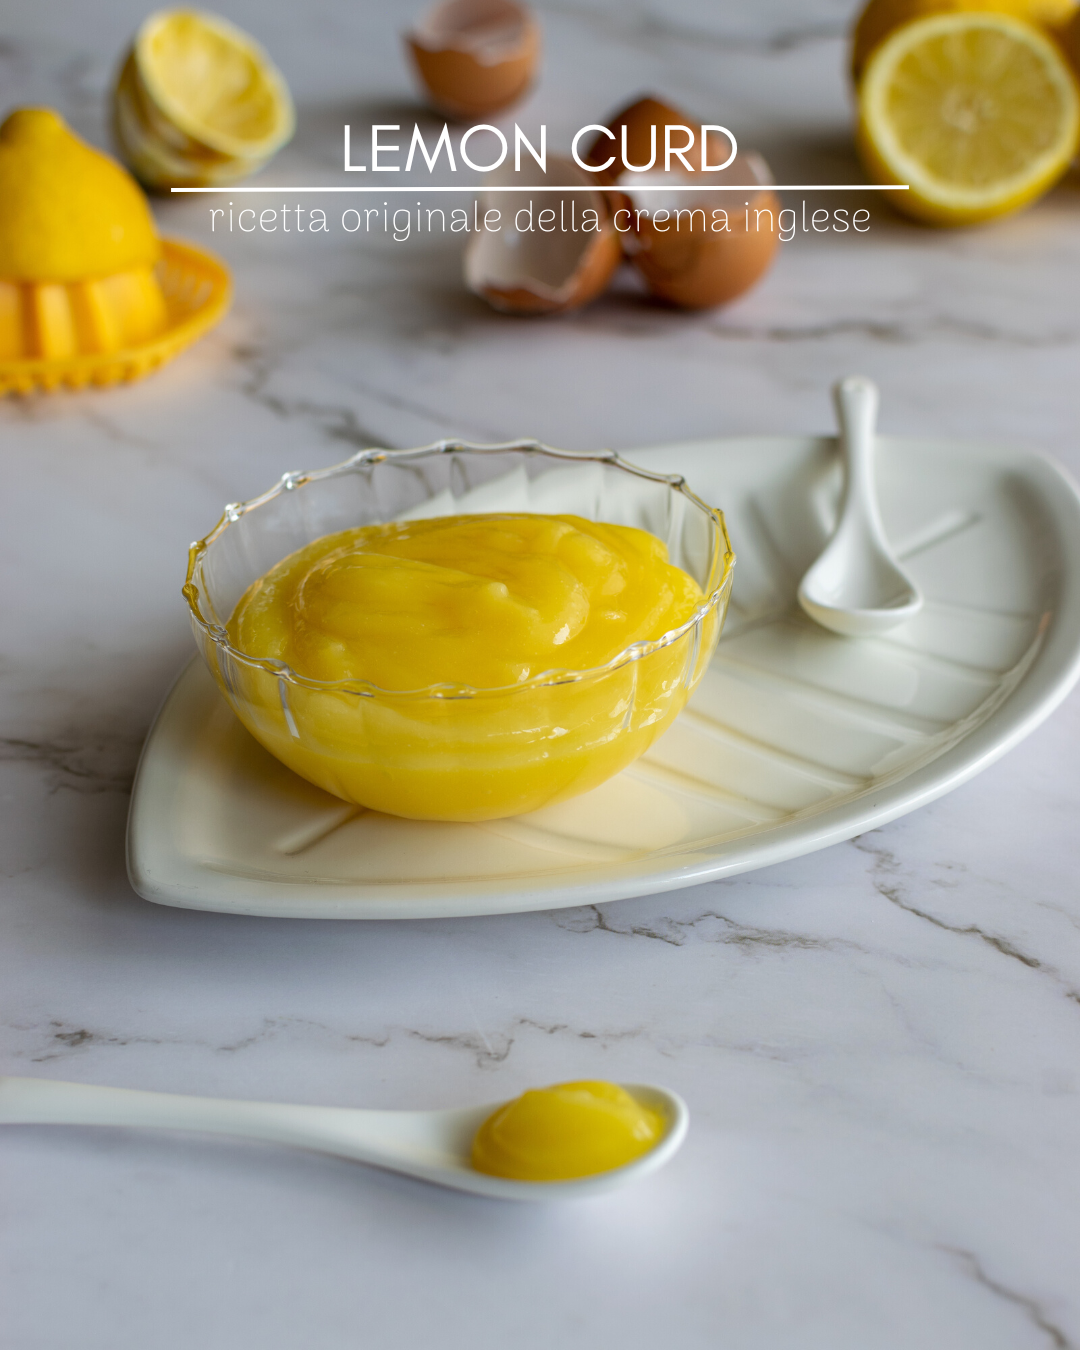 Ricetta originale della crema inglese al limone